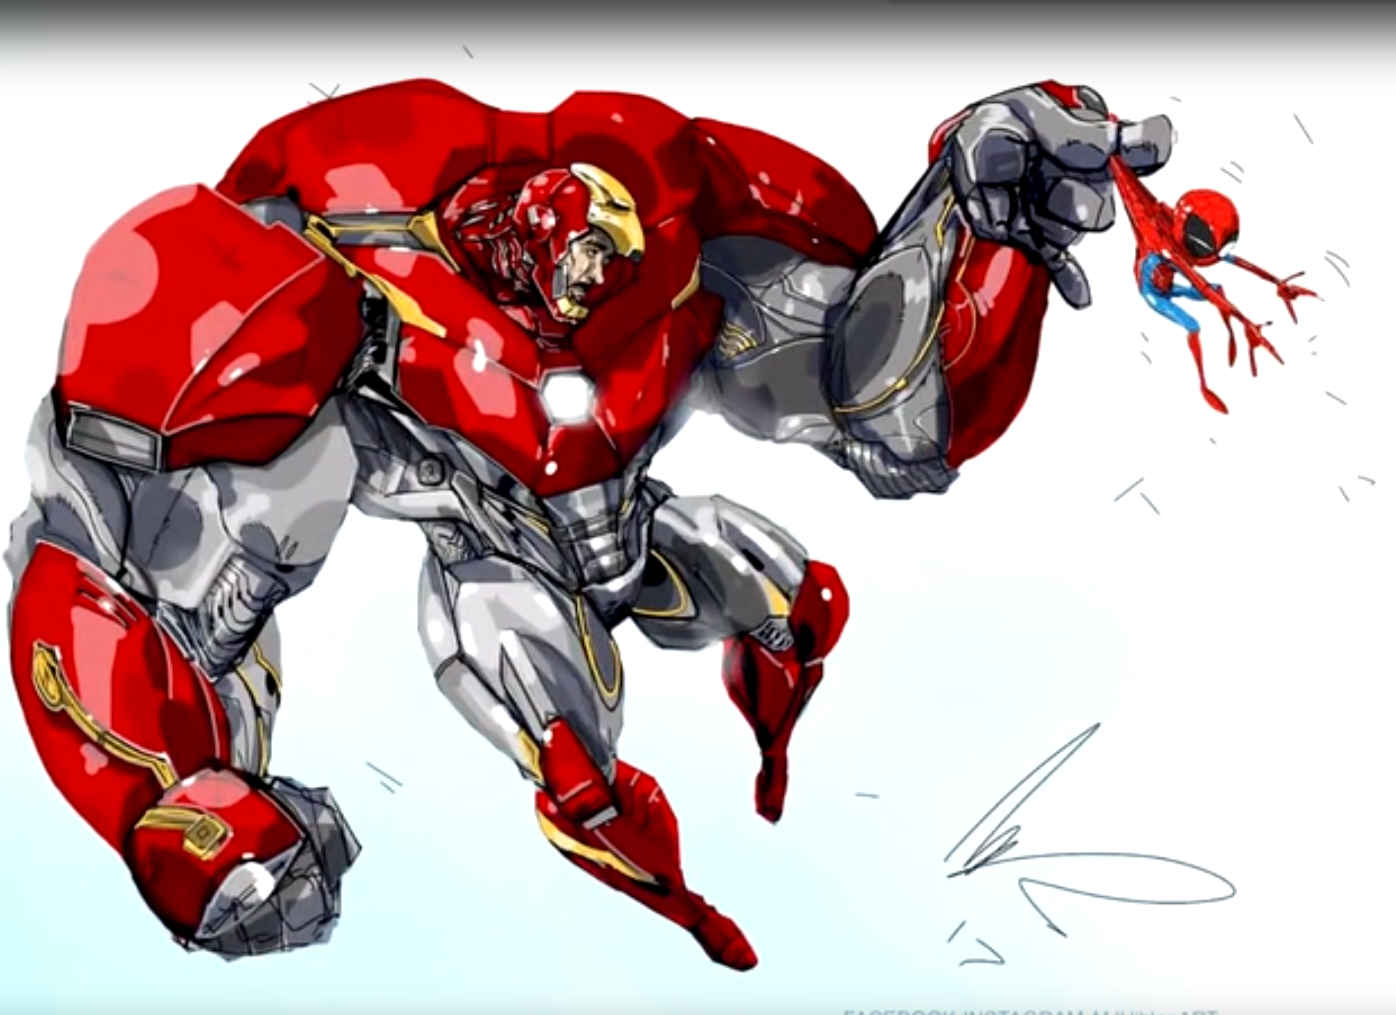 手绘，原画风格的漫威超级英雄钢铁侠，绿巨人等壁纸图片套图1